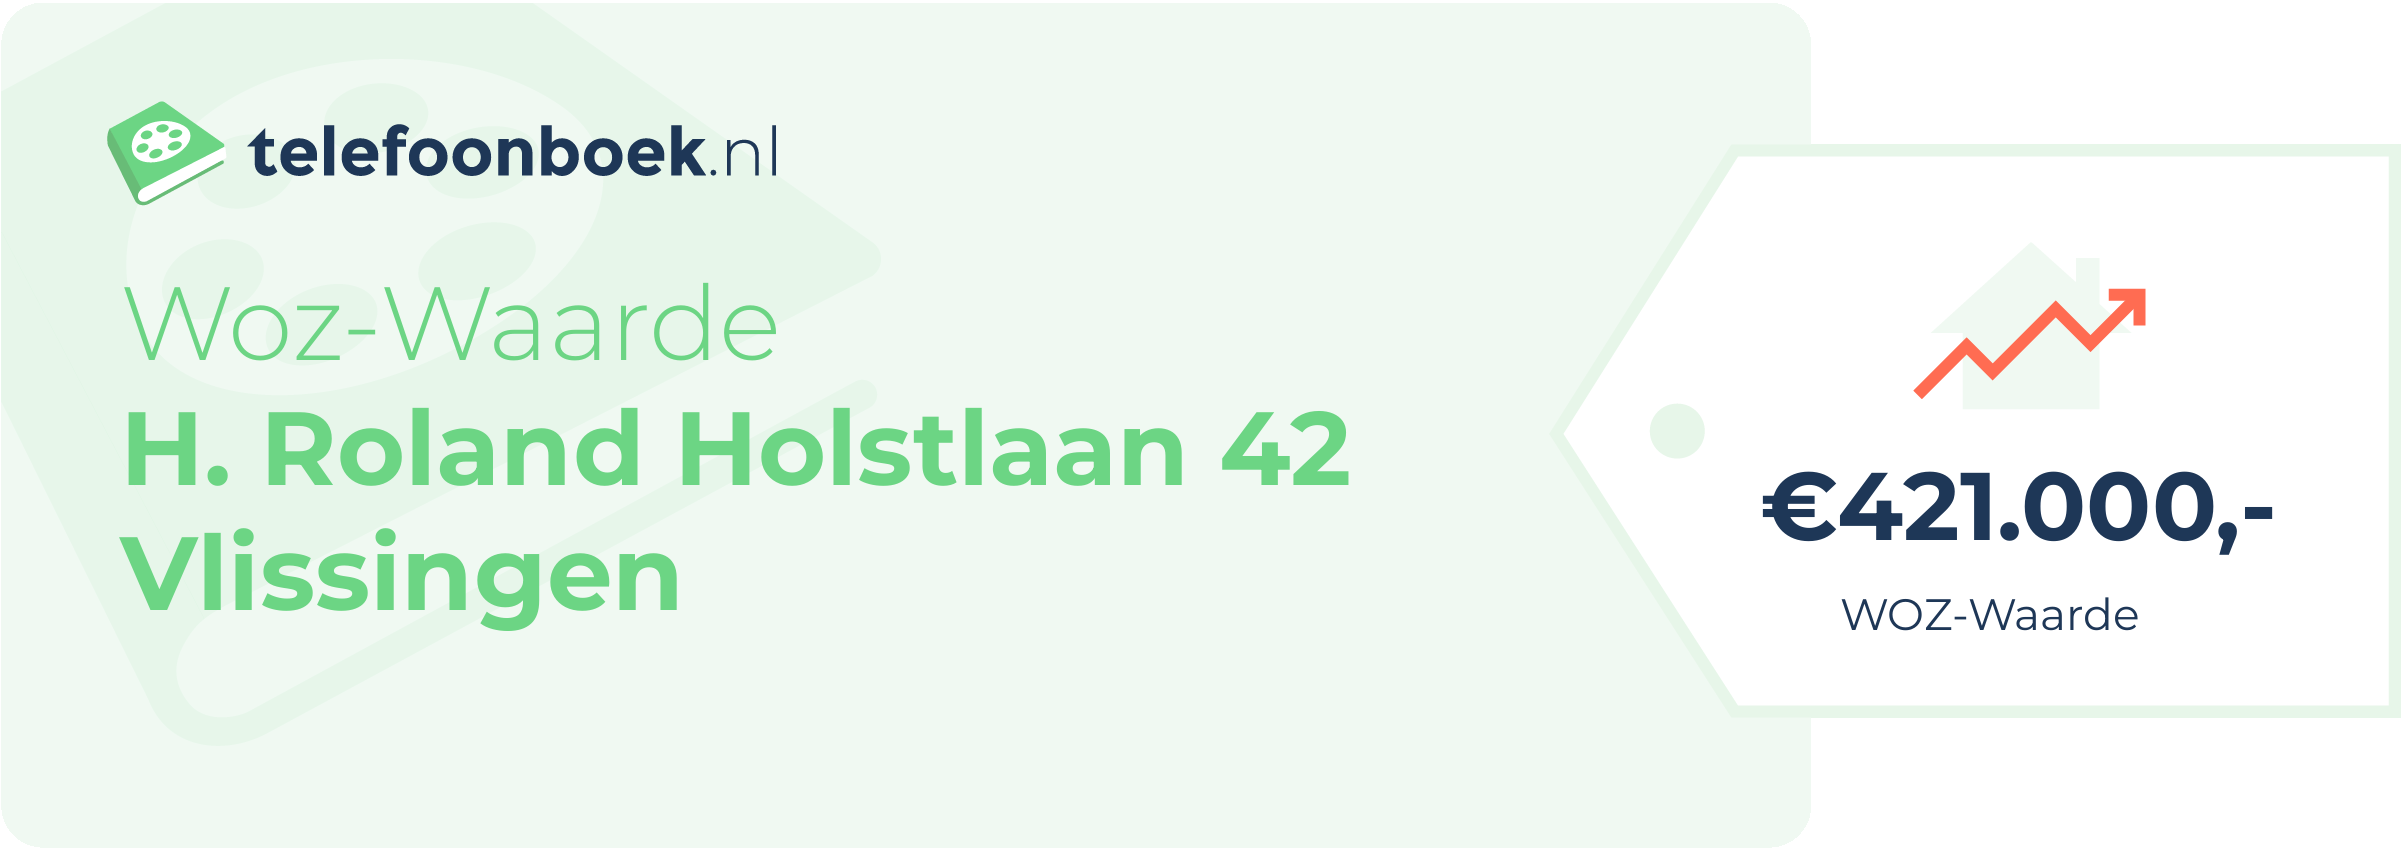 WOZ-waarde H. Roland Holstlaan 42 Vlissingen